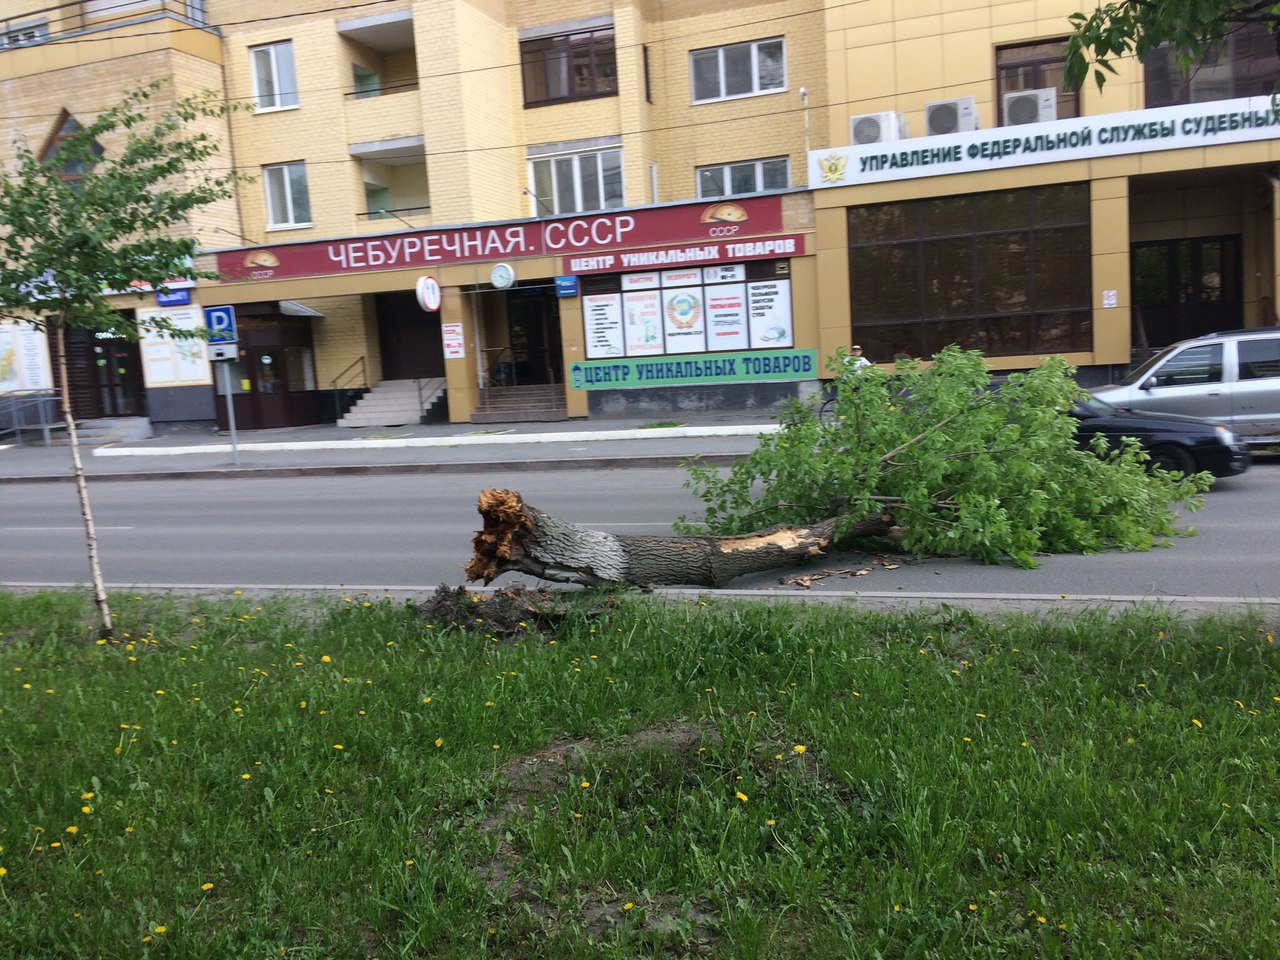 Упавшее дерево рядом с пересечением улиц Котовского и Одесской - еще одно последствие сильного ветра в Тюмени